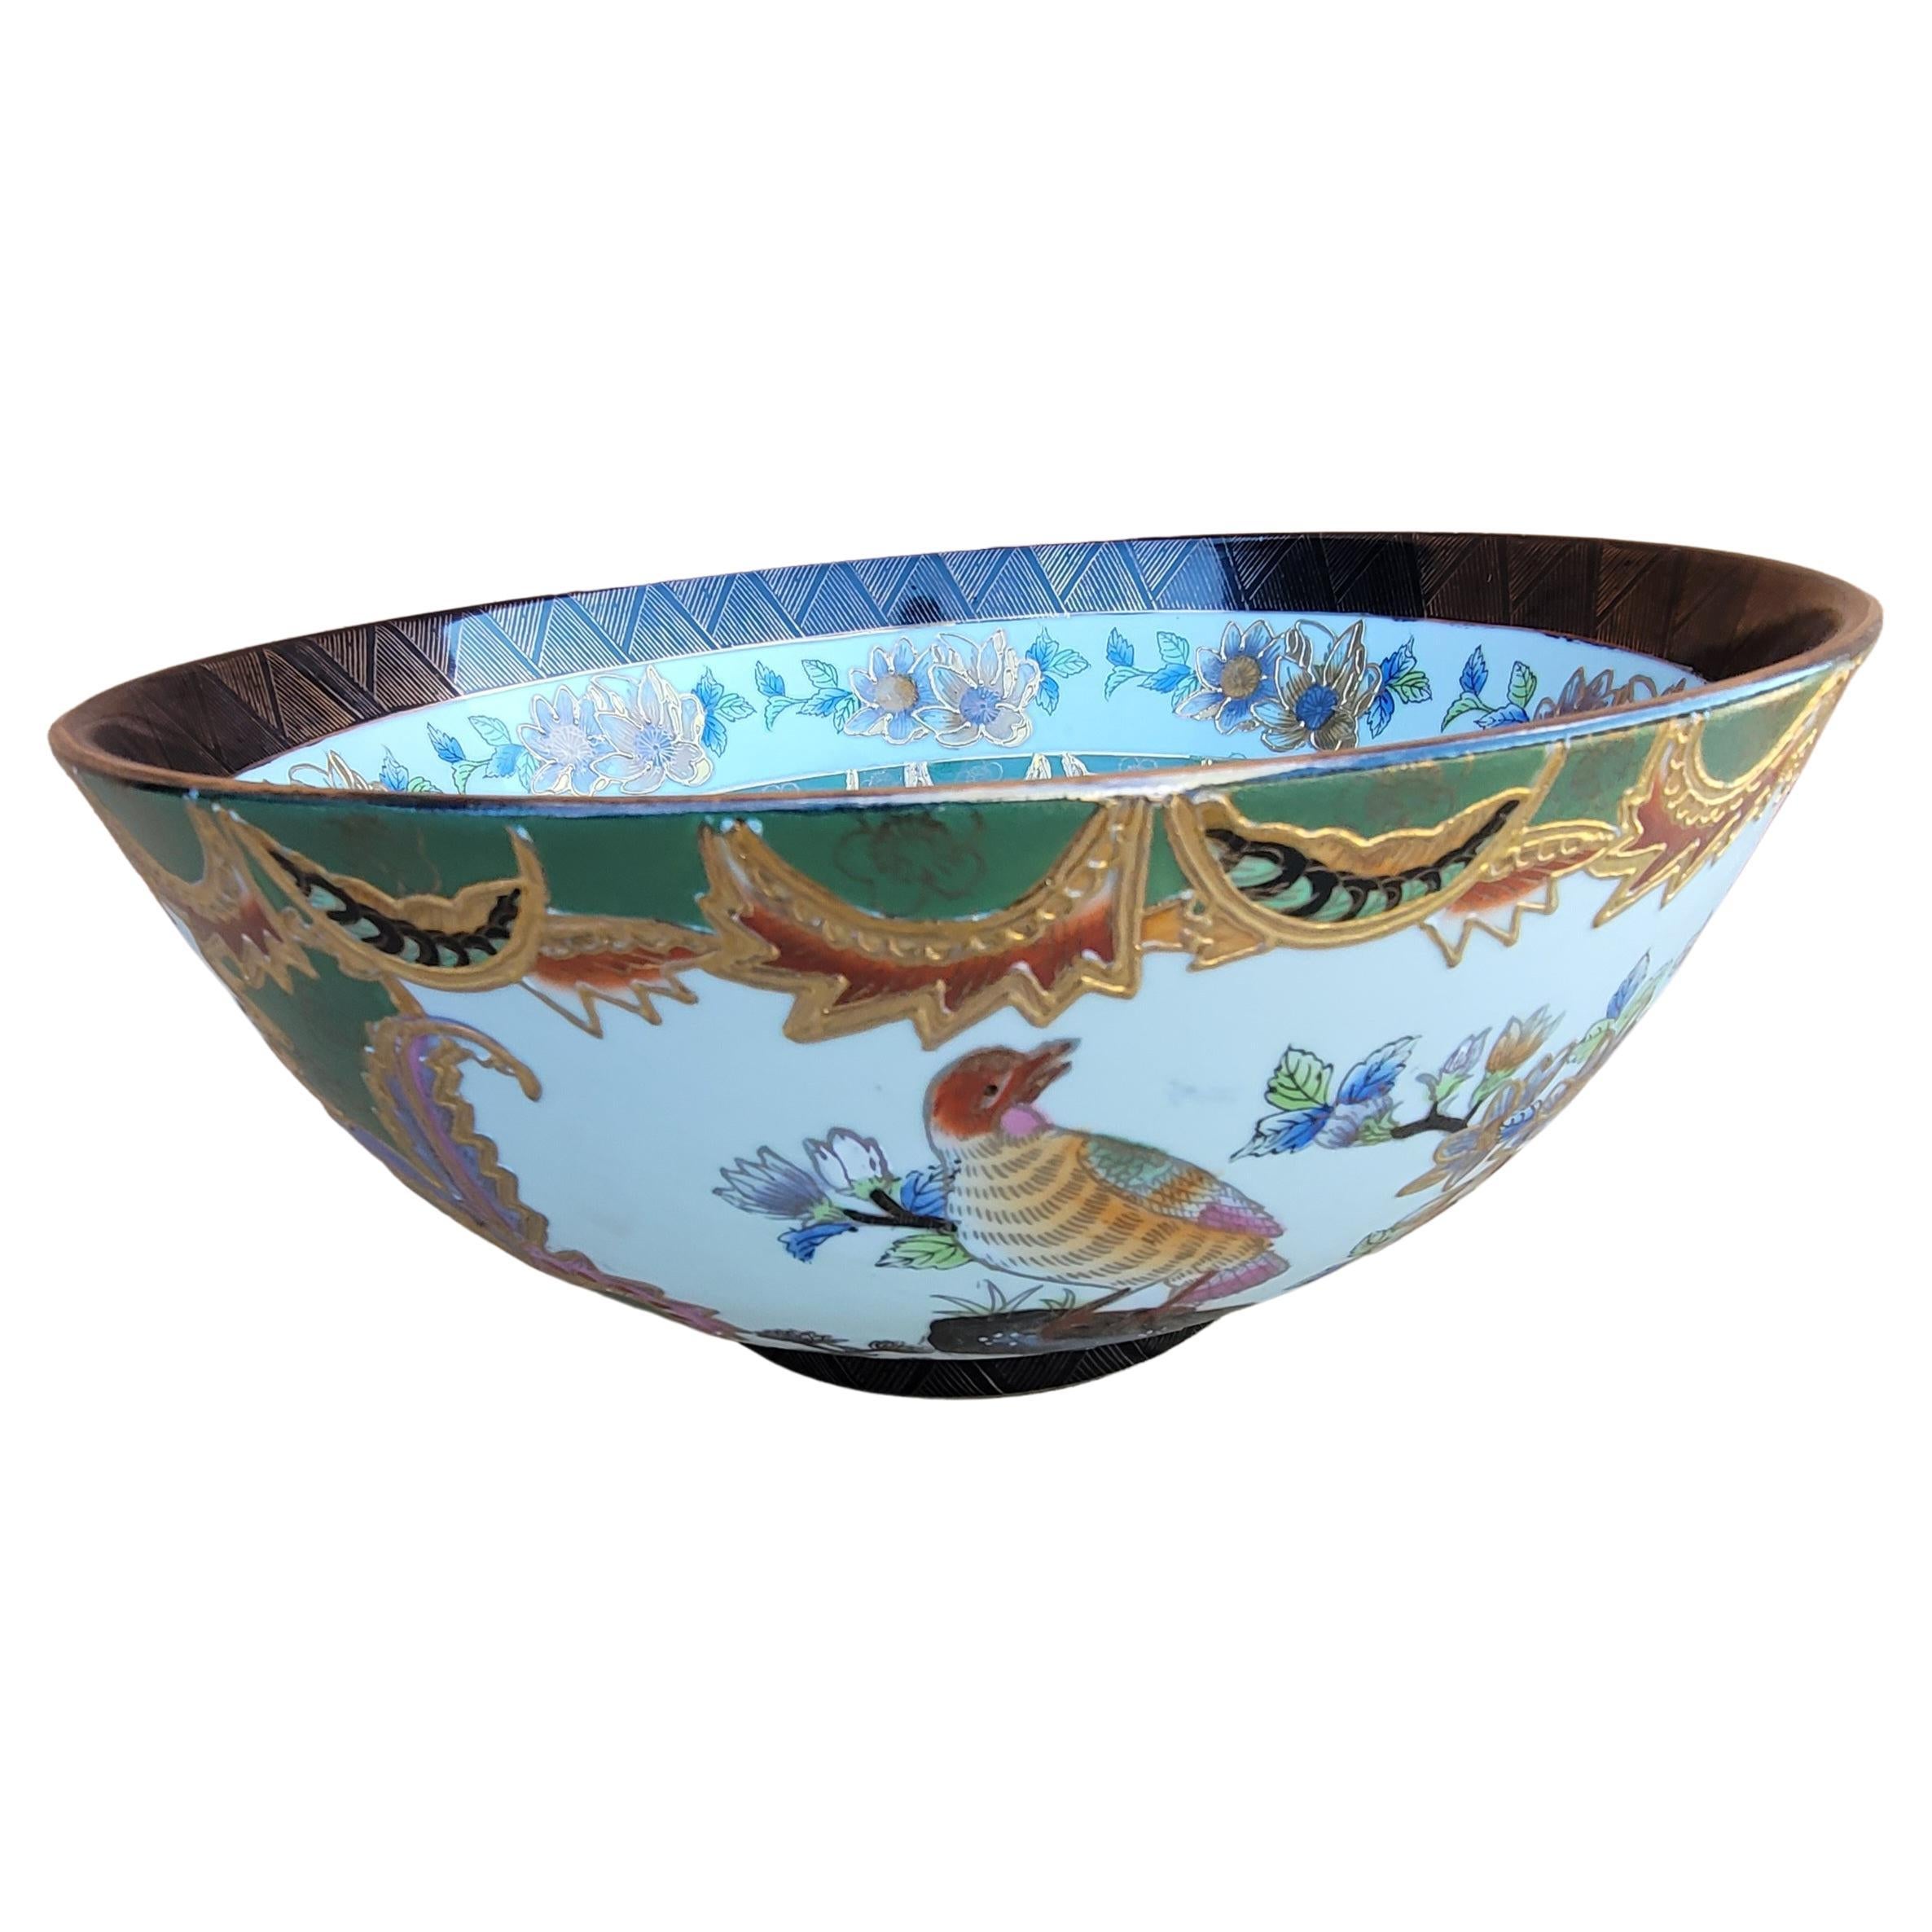 Grand bol en porcelaine chinoise peint à la main, décoré d'émail et de dorures